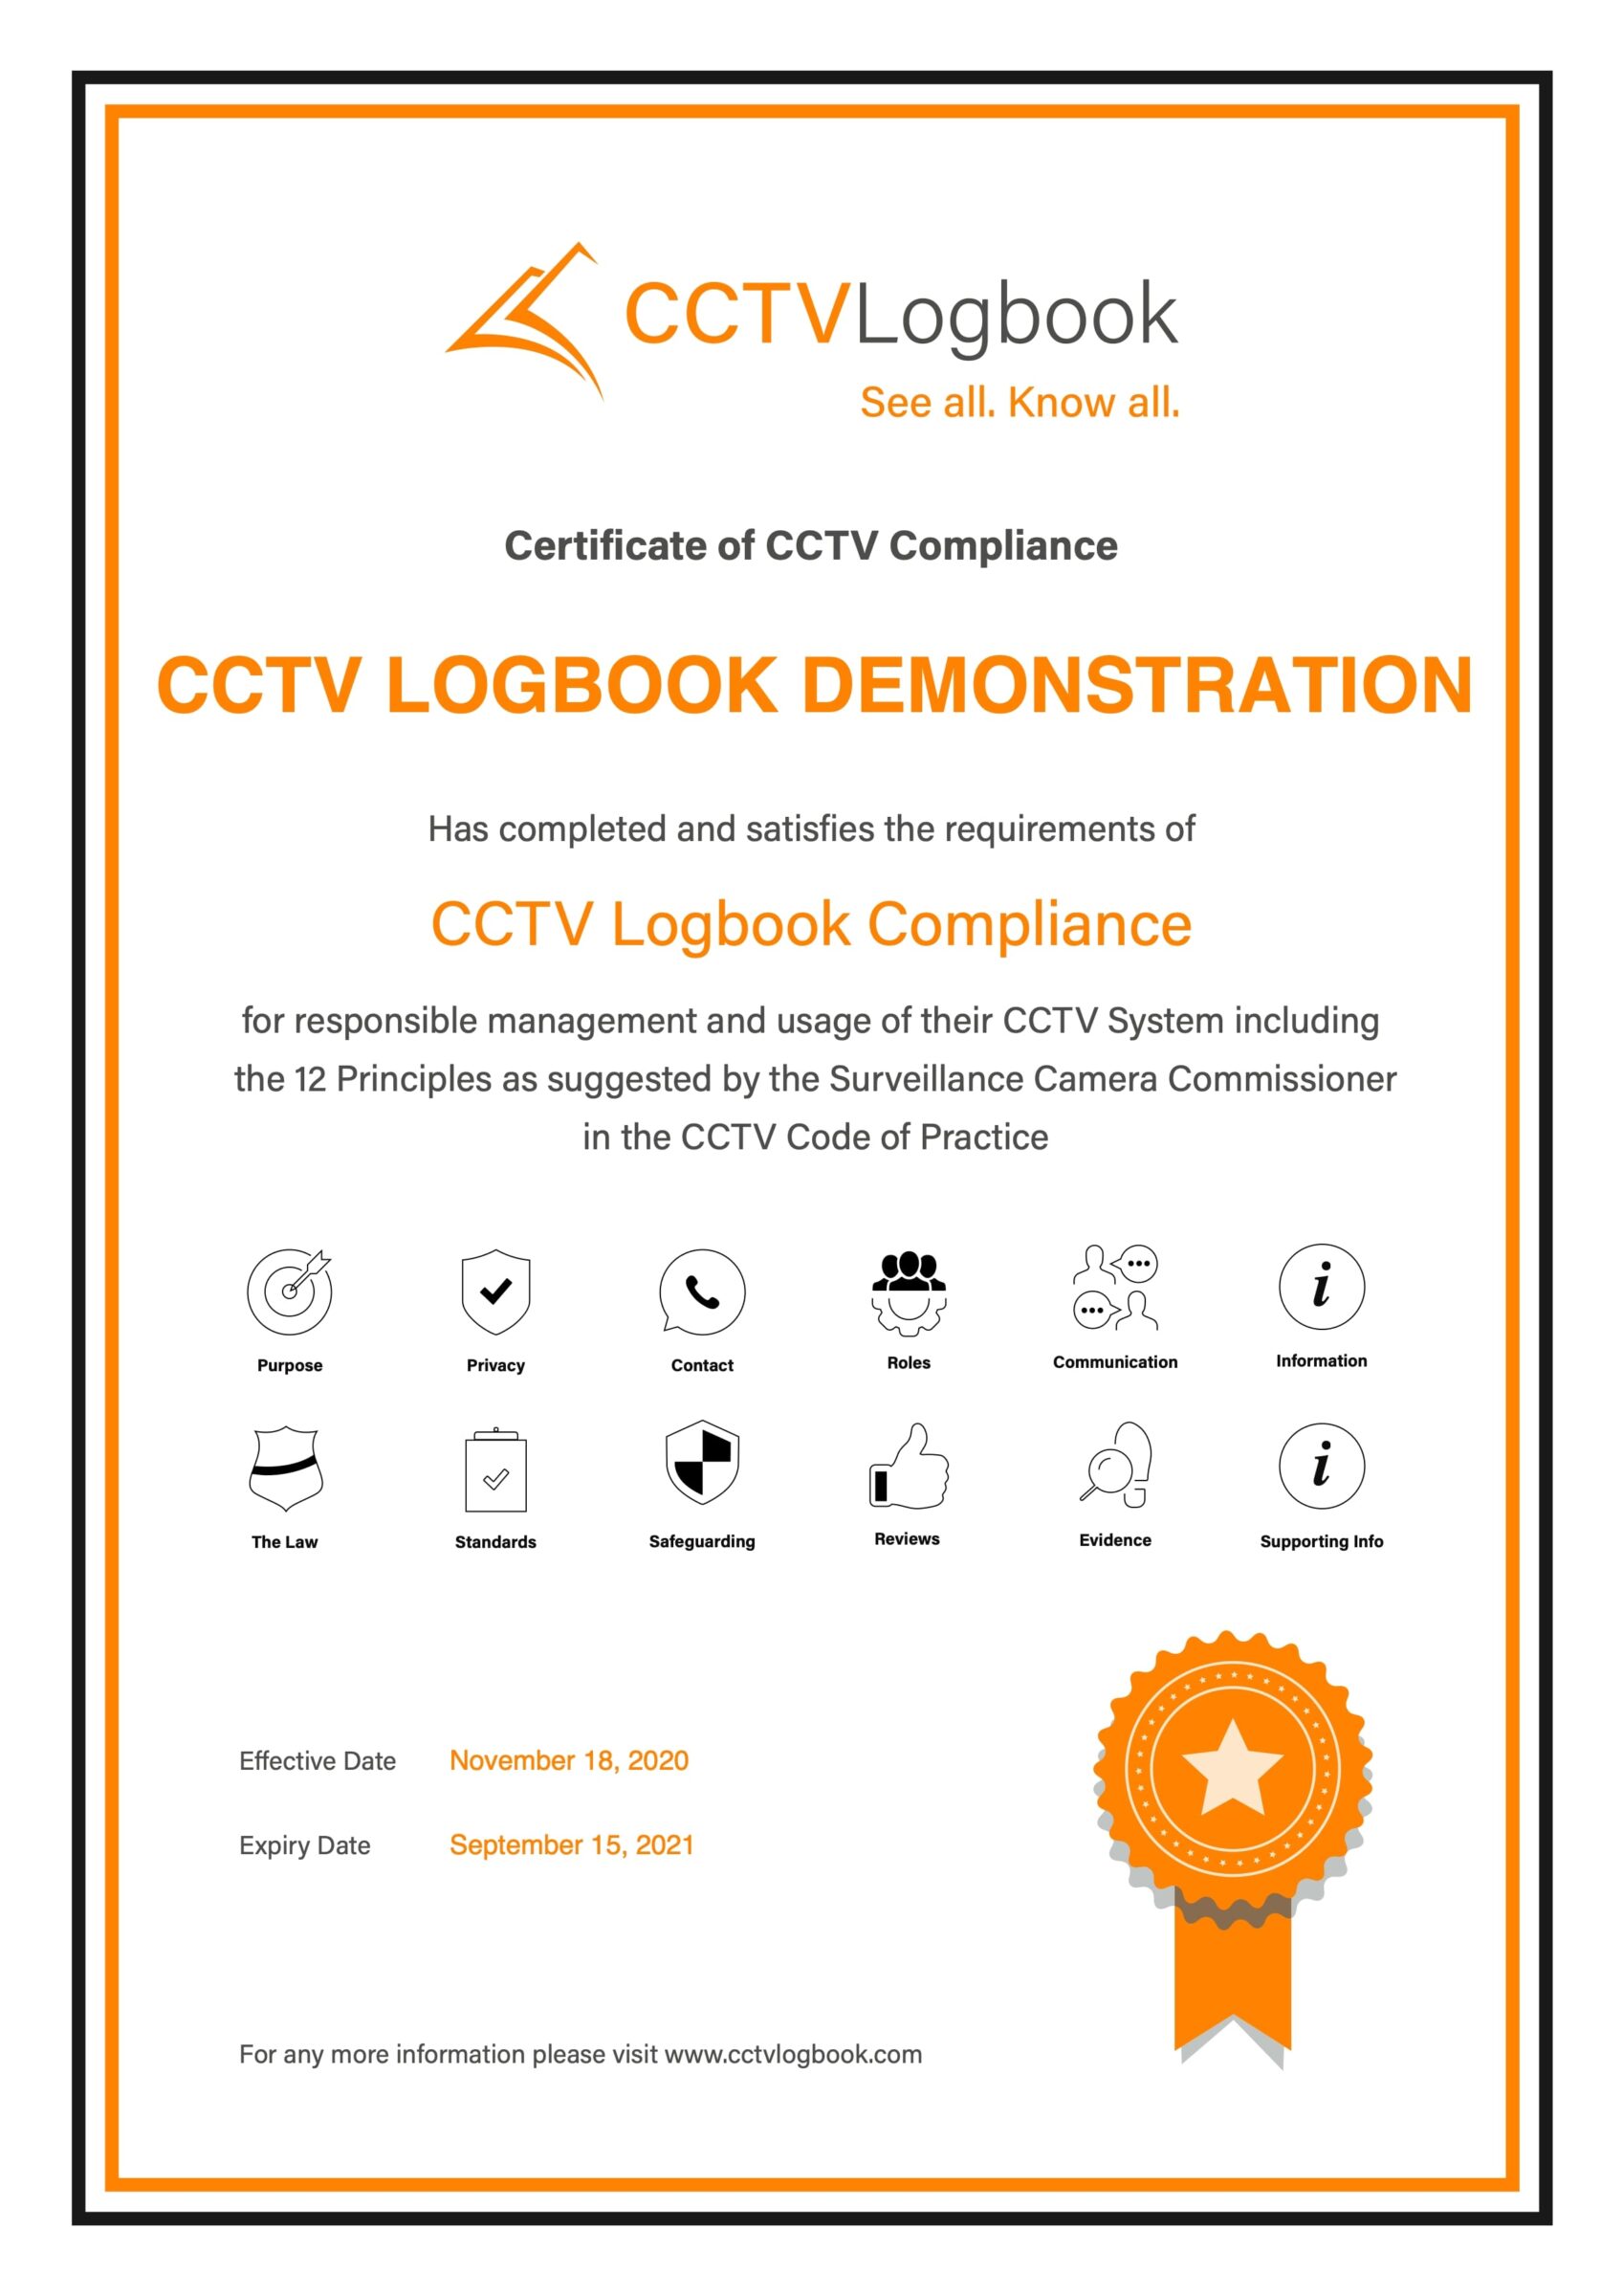 Compliance Certificate Image CCTV Logbook